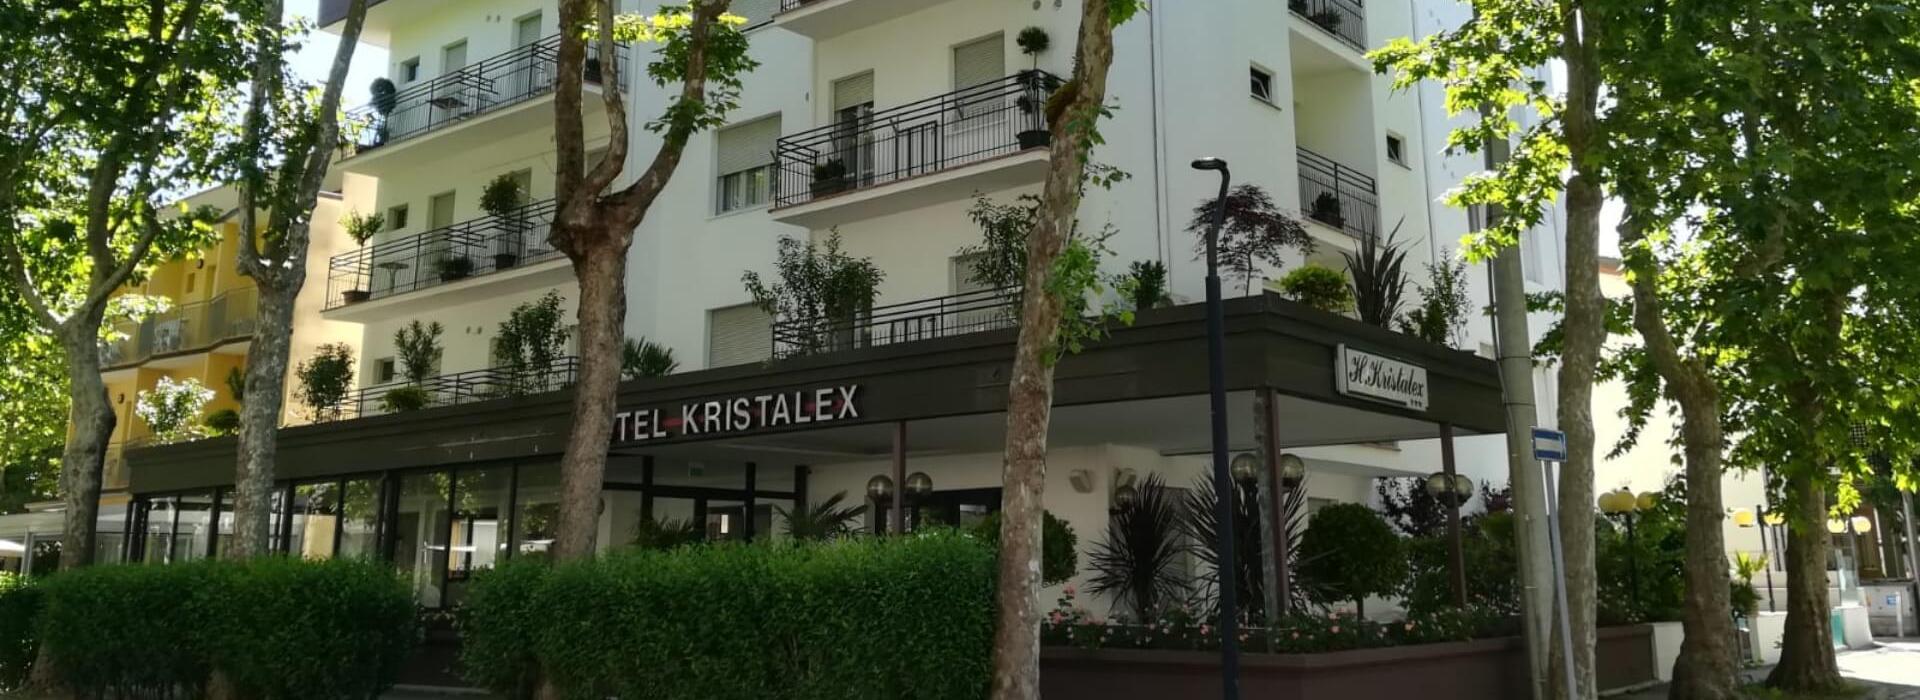 hotelkristalex it speciale-super-offerta-benvenuto-in-hotel-pet-friendly-vicino-al-mare-cesenatico 015